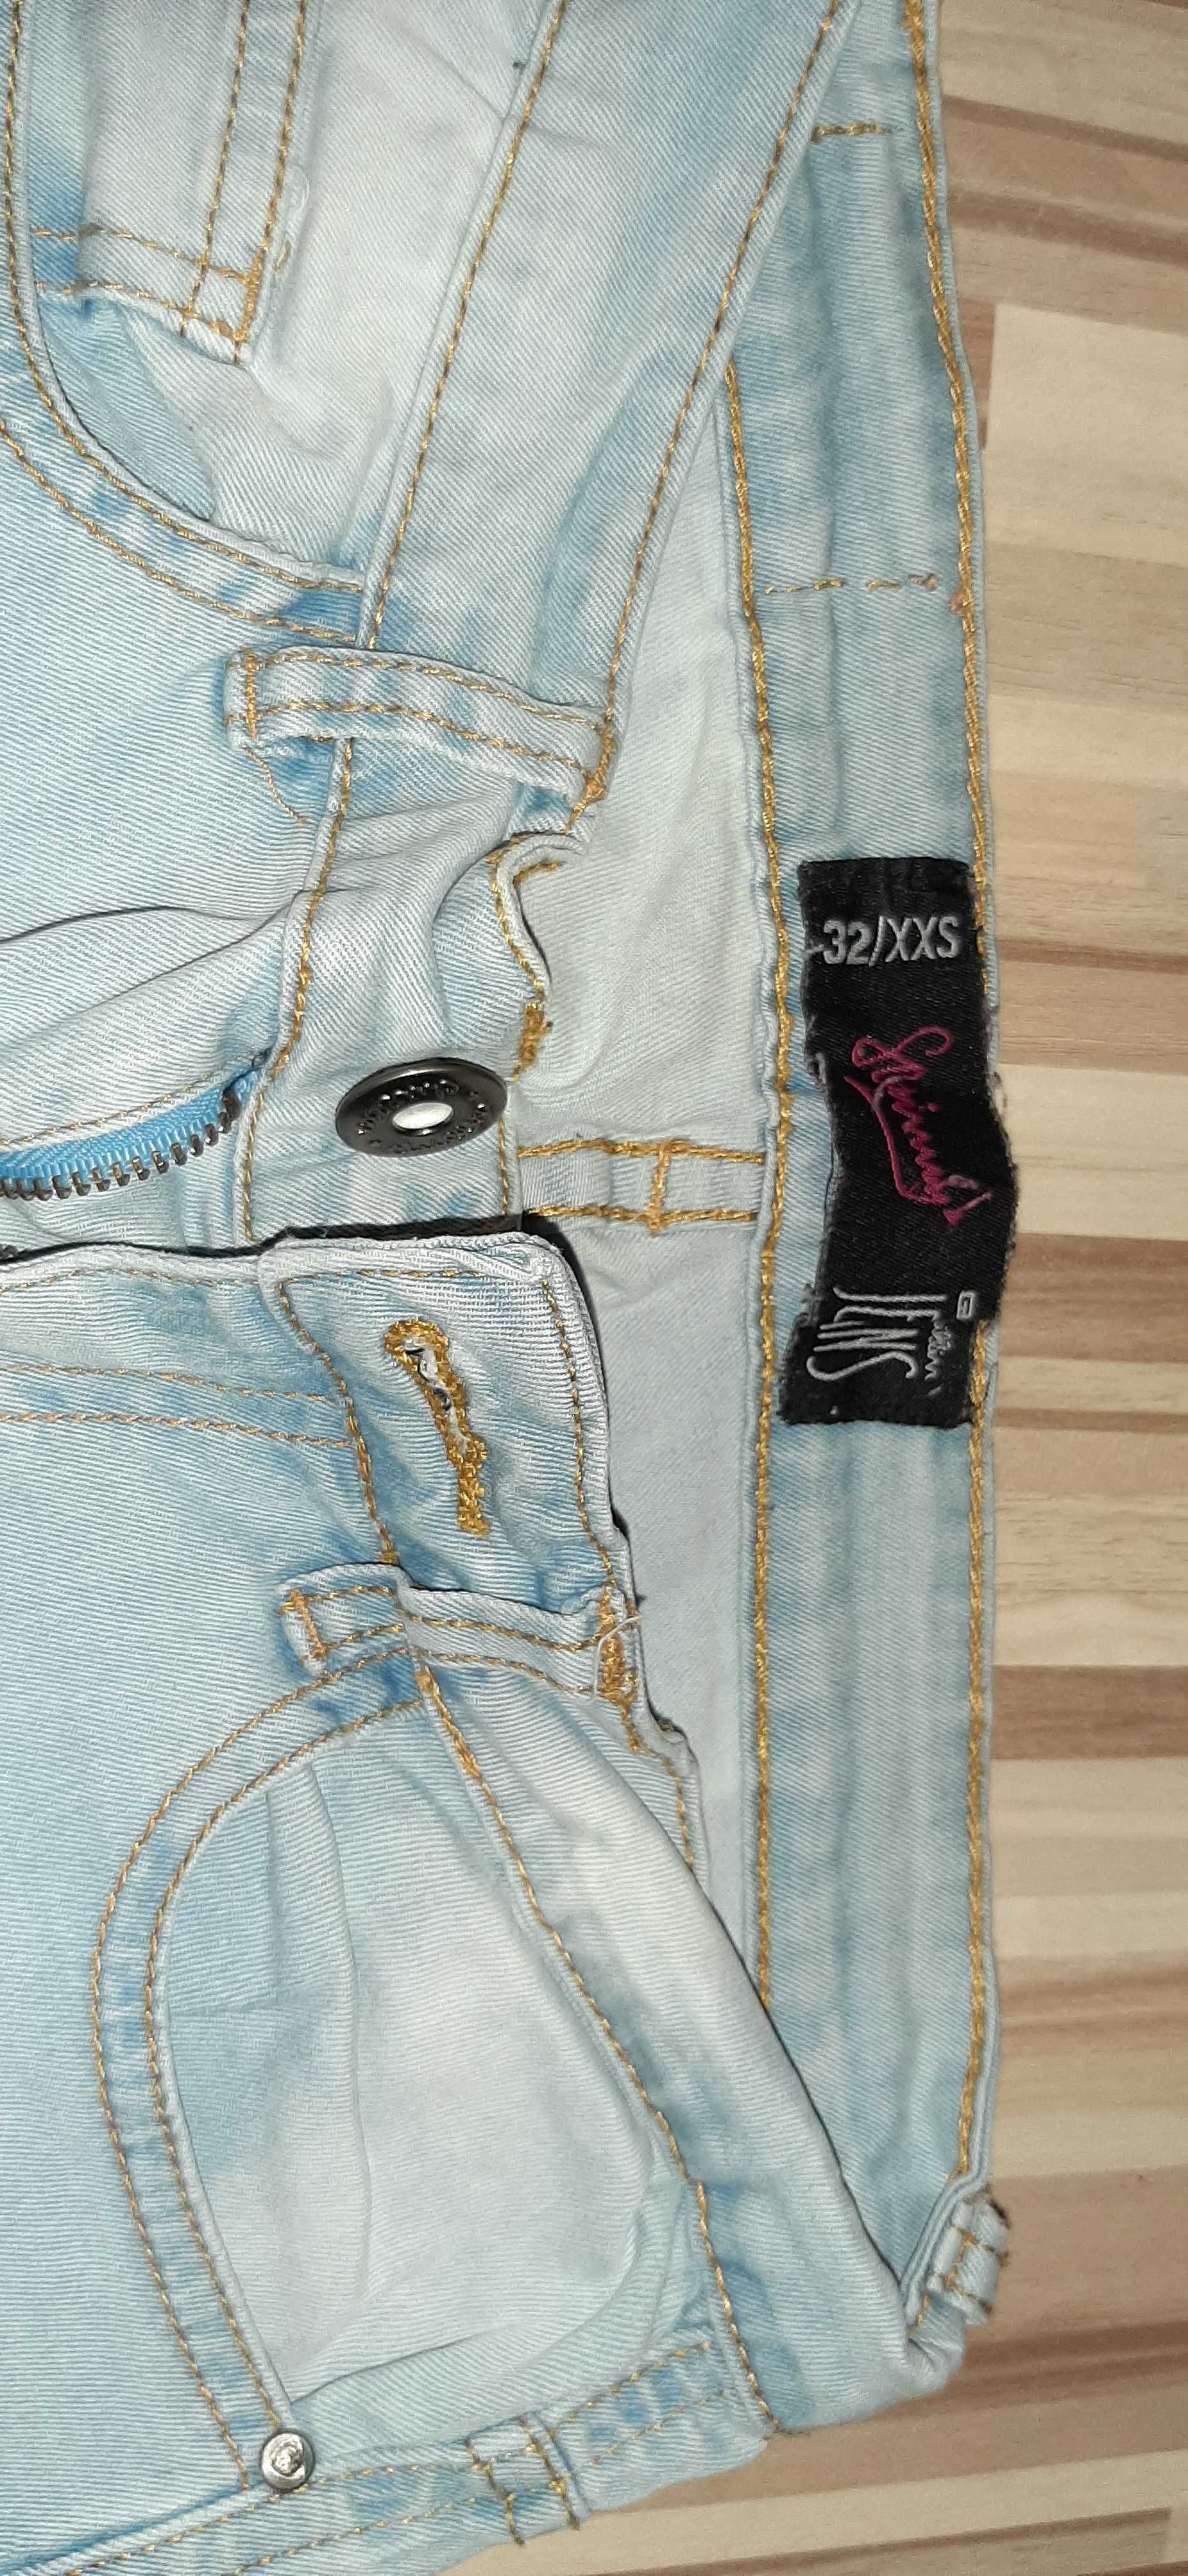 Pakiet 6 par jeans XS